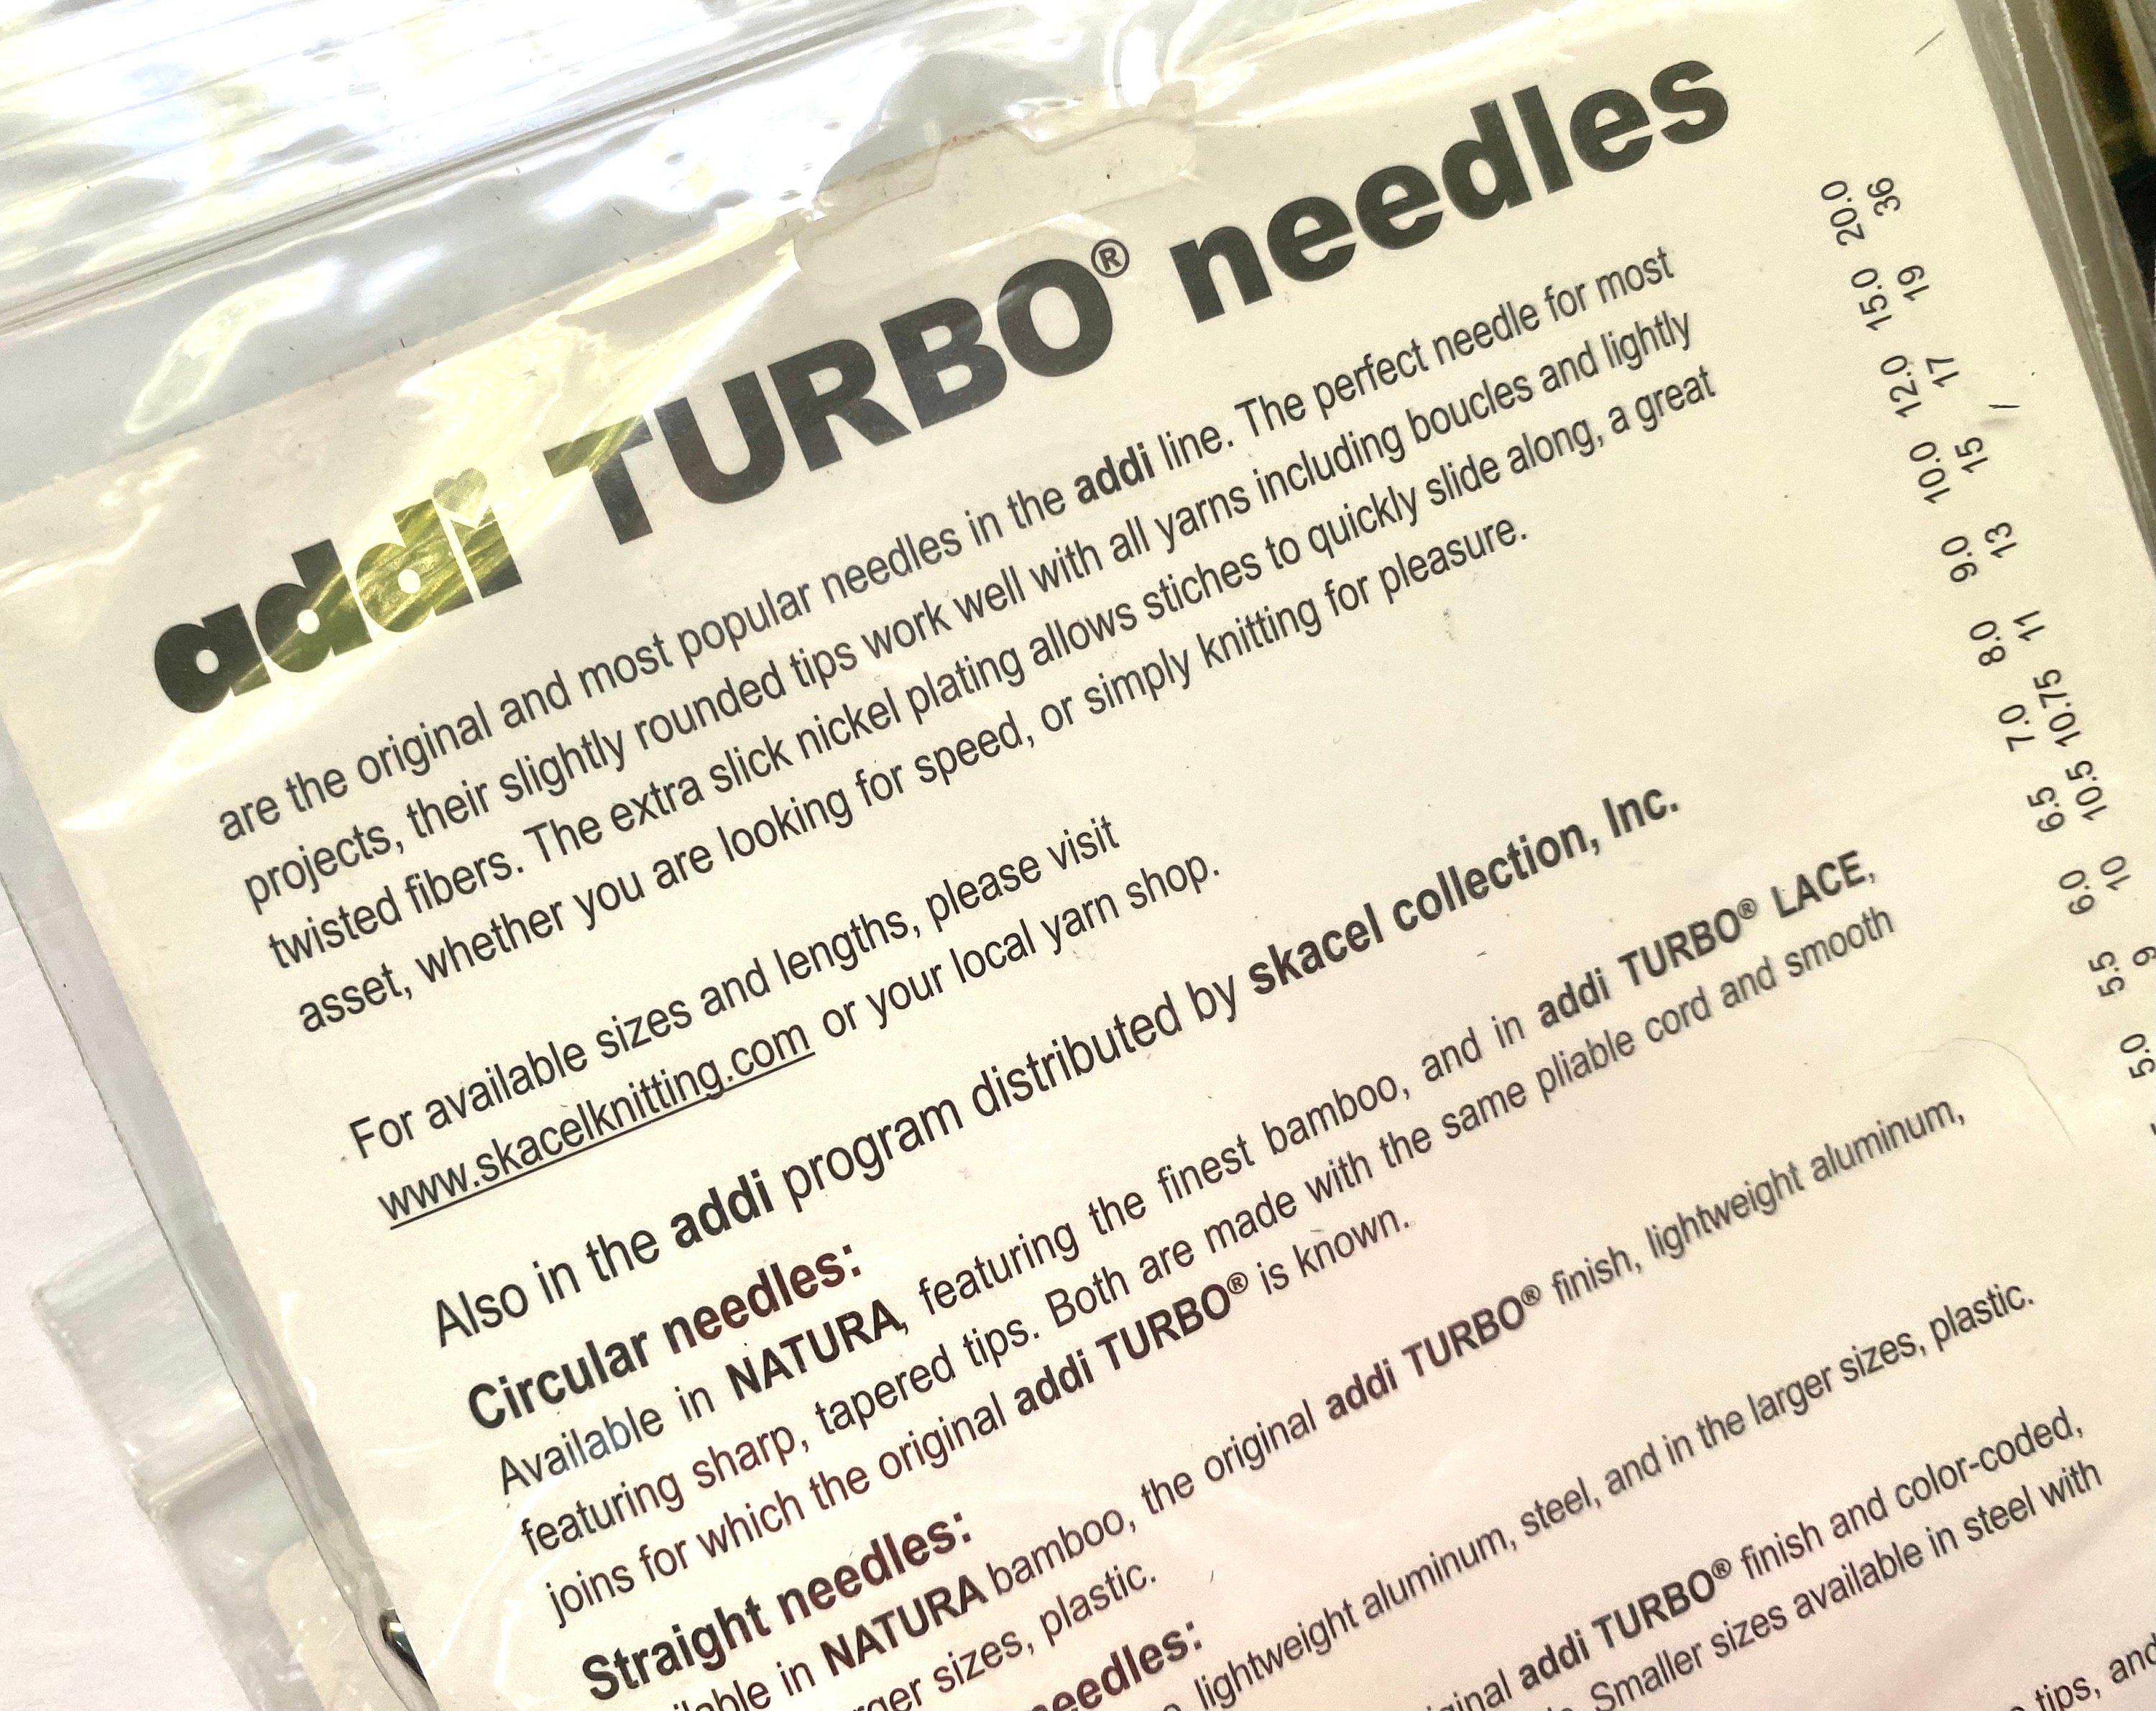 Addi Turbo 60 inch/US 8 Circular Knitting Needles at Fabulous Yarn